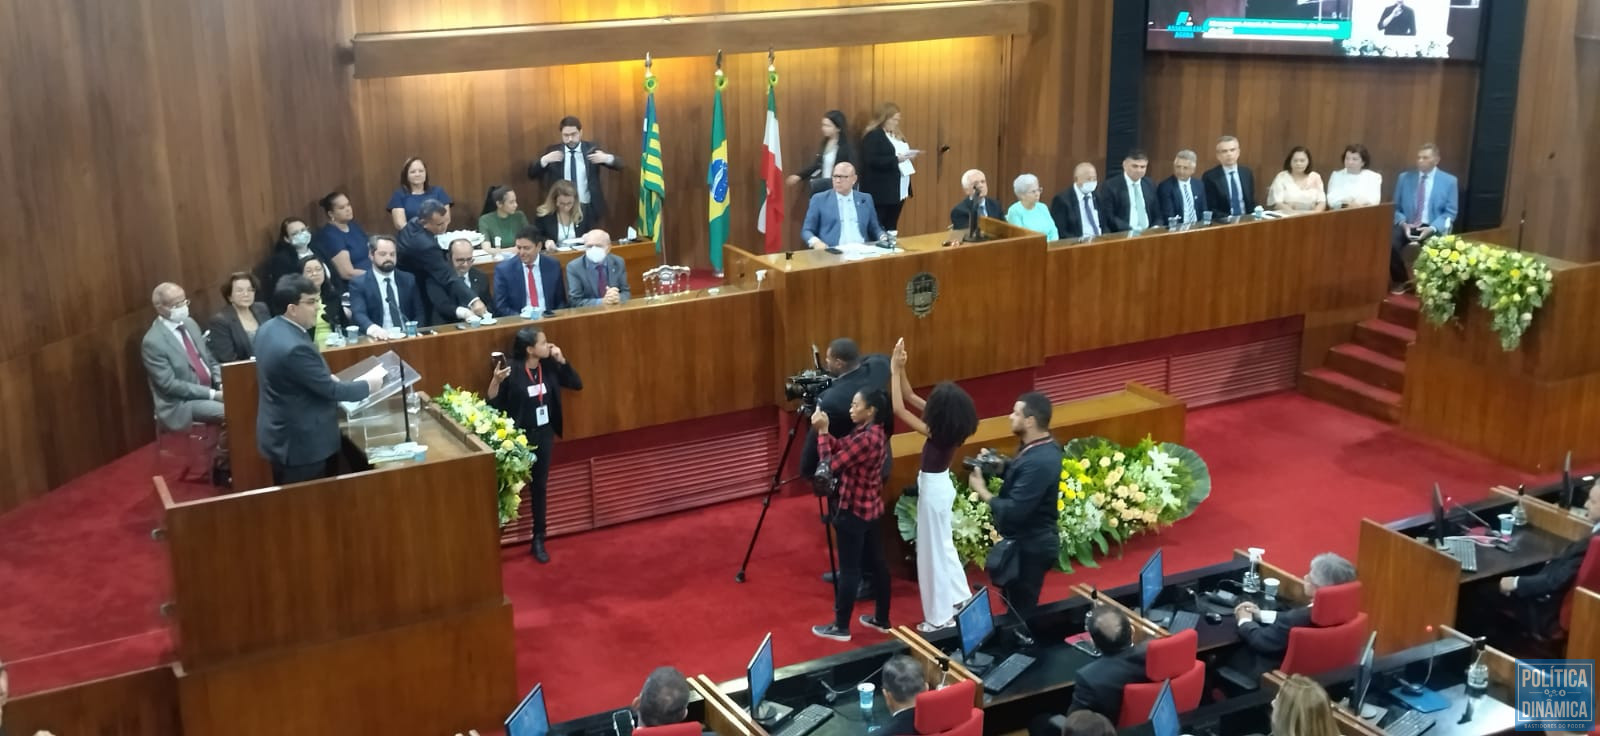 Na mensagem, governador iniciou fazendo crítica ao ex-governo de Bolsonaro e disse que os tempos sombrios passaram (foto: Política Dinâmica)